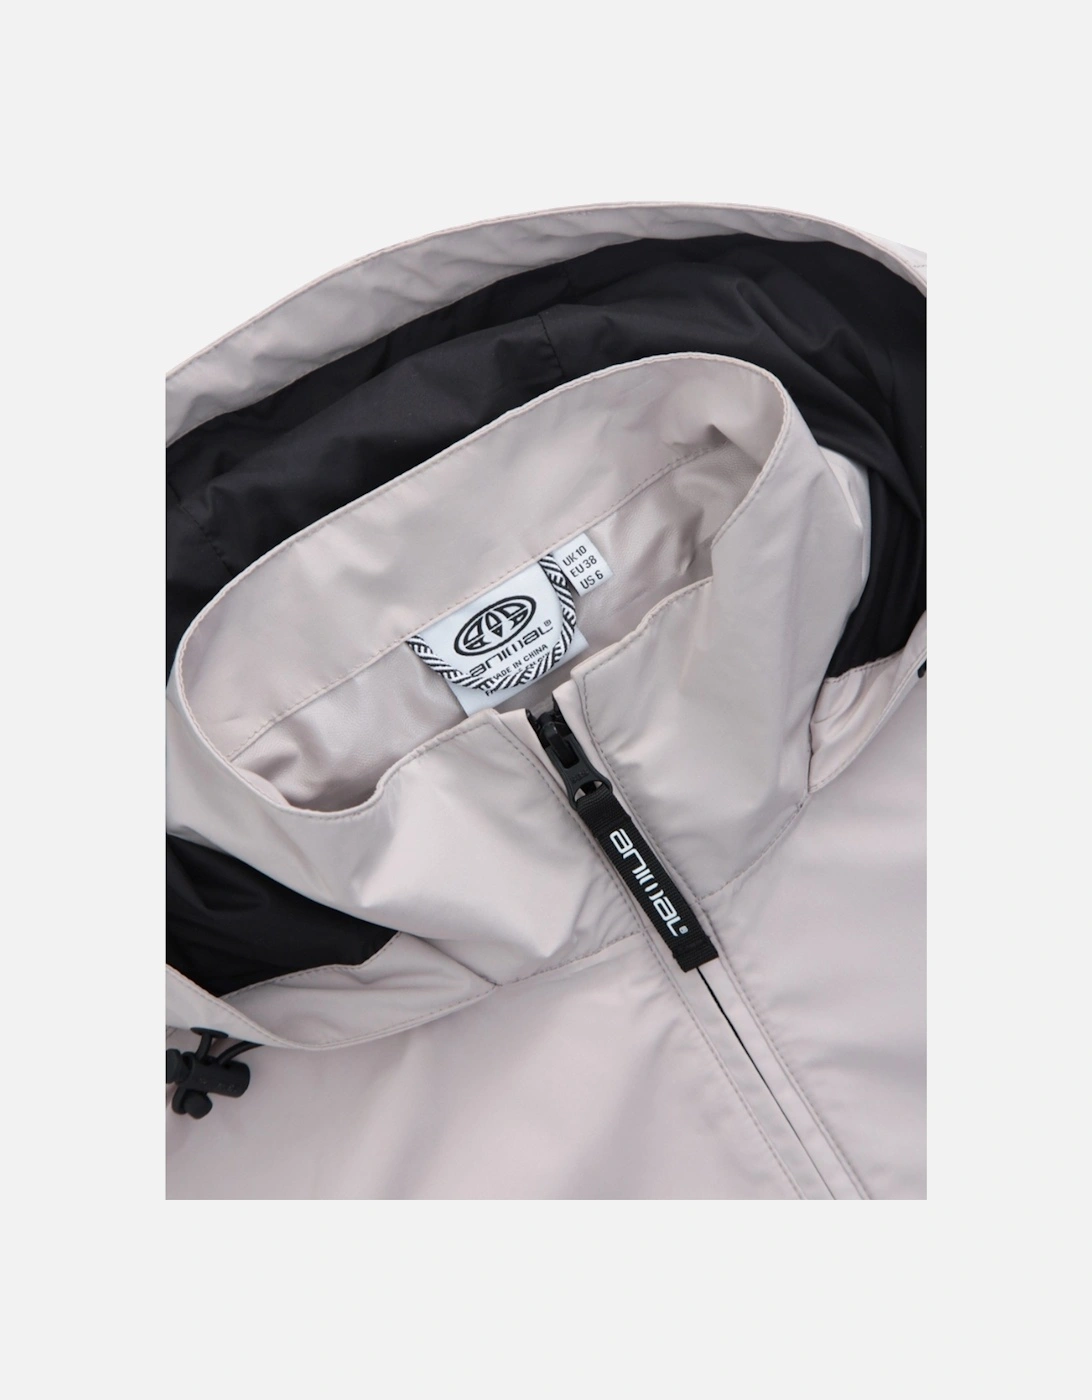 Womens/Ladies Pace Packable Waterproof Jacket